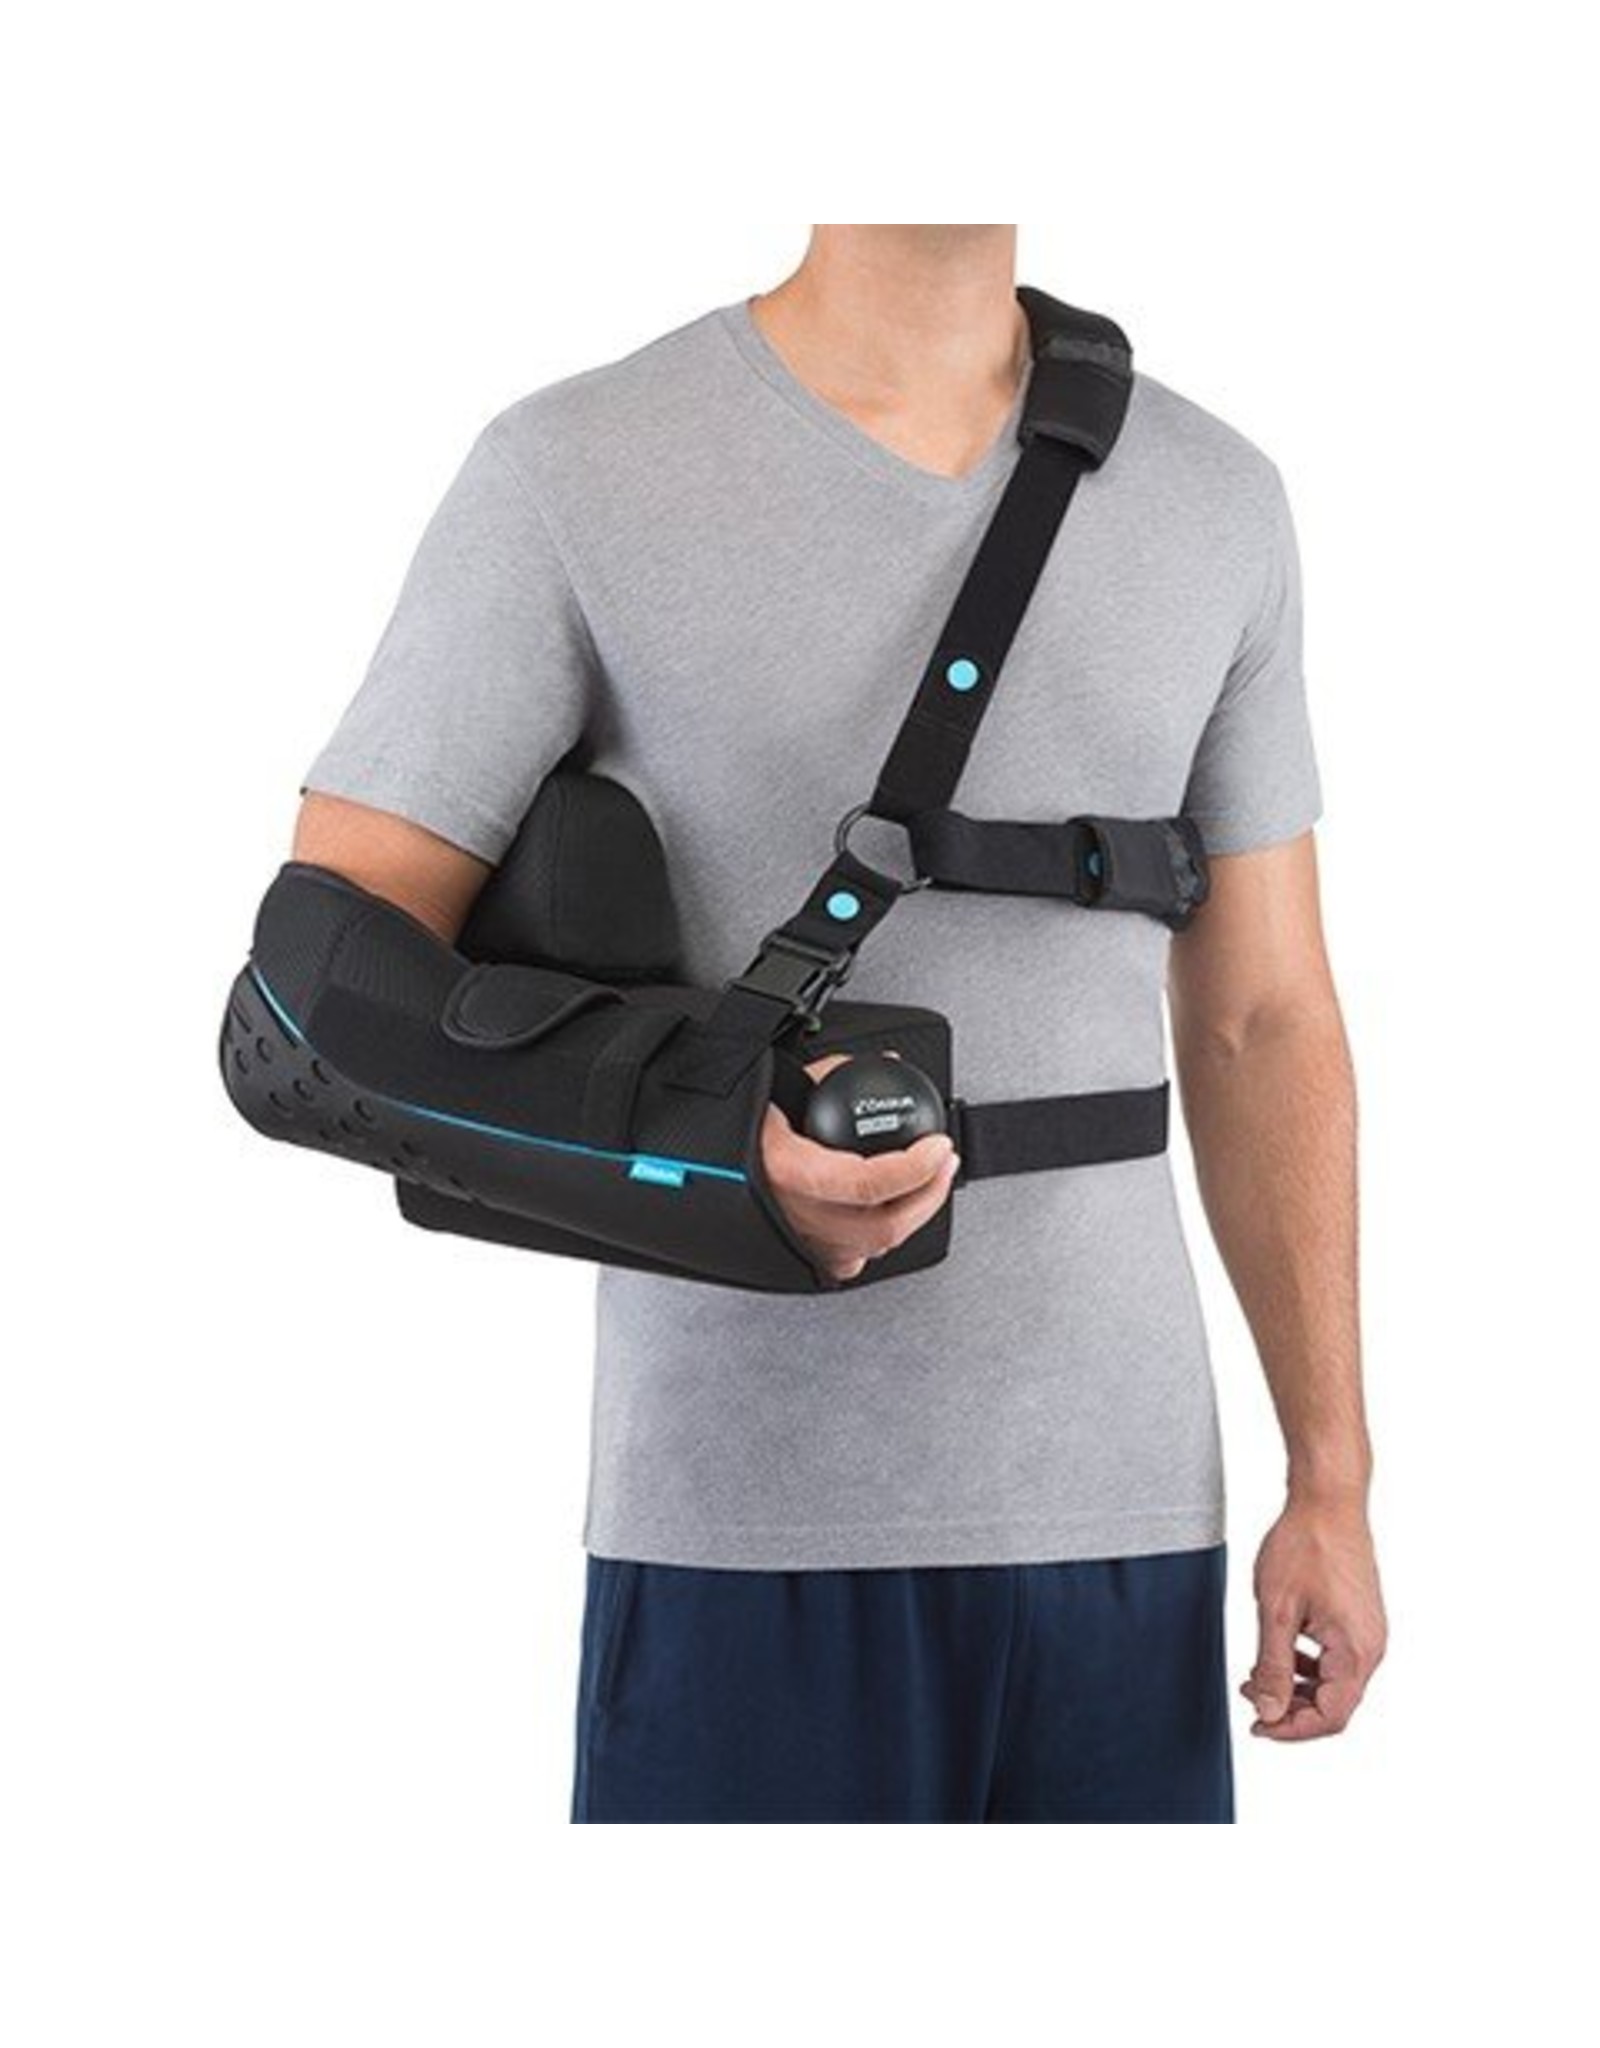 Ossur Formfit Shoulder Brace with ABD Kit